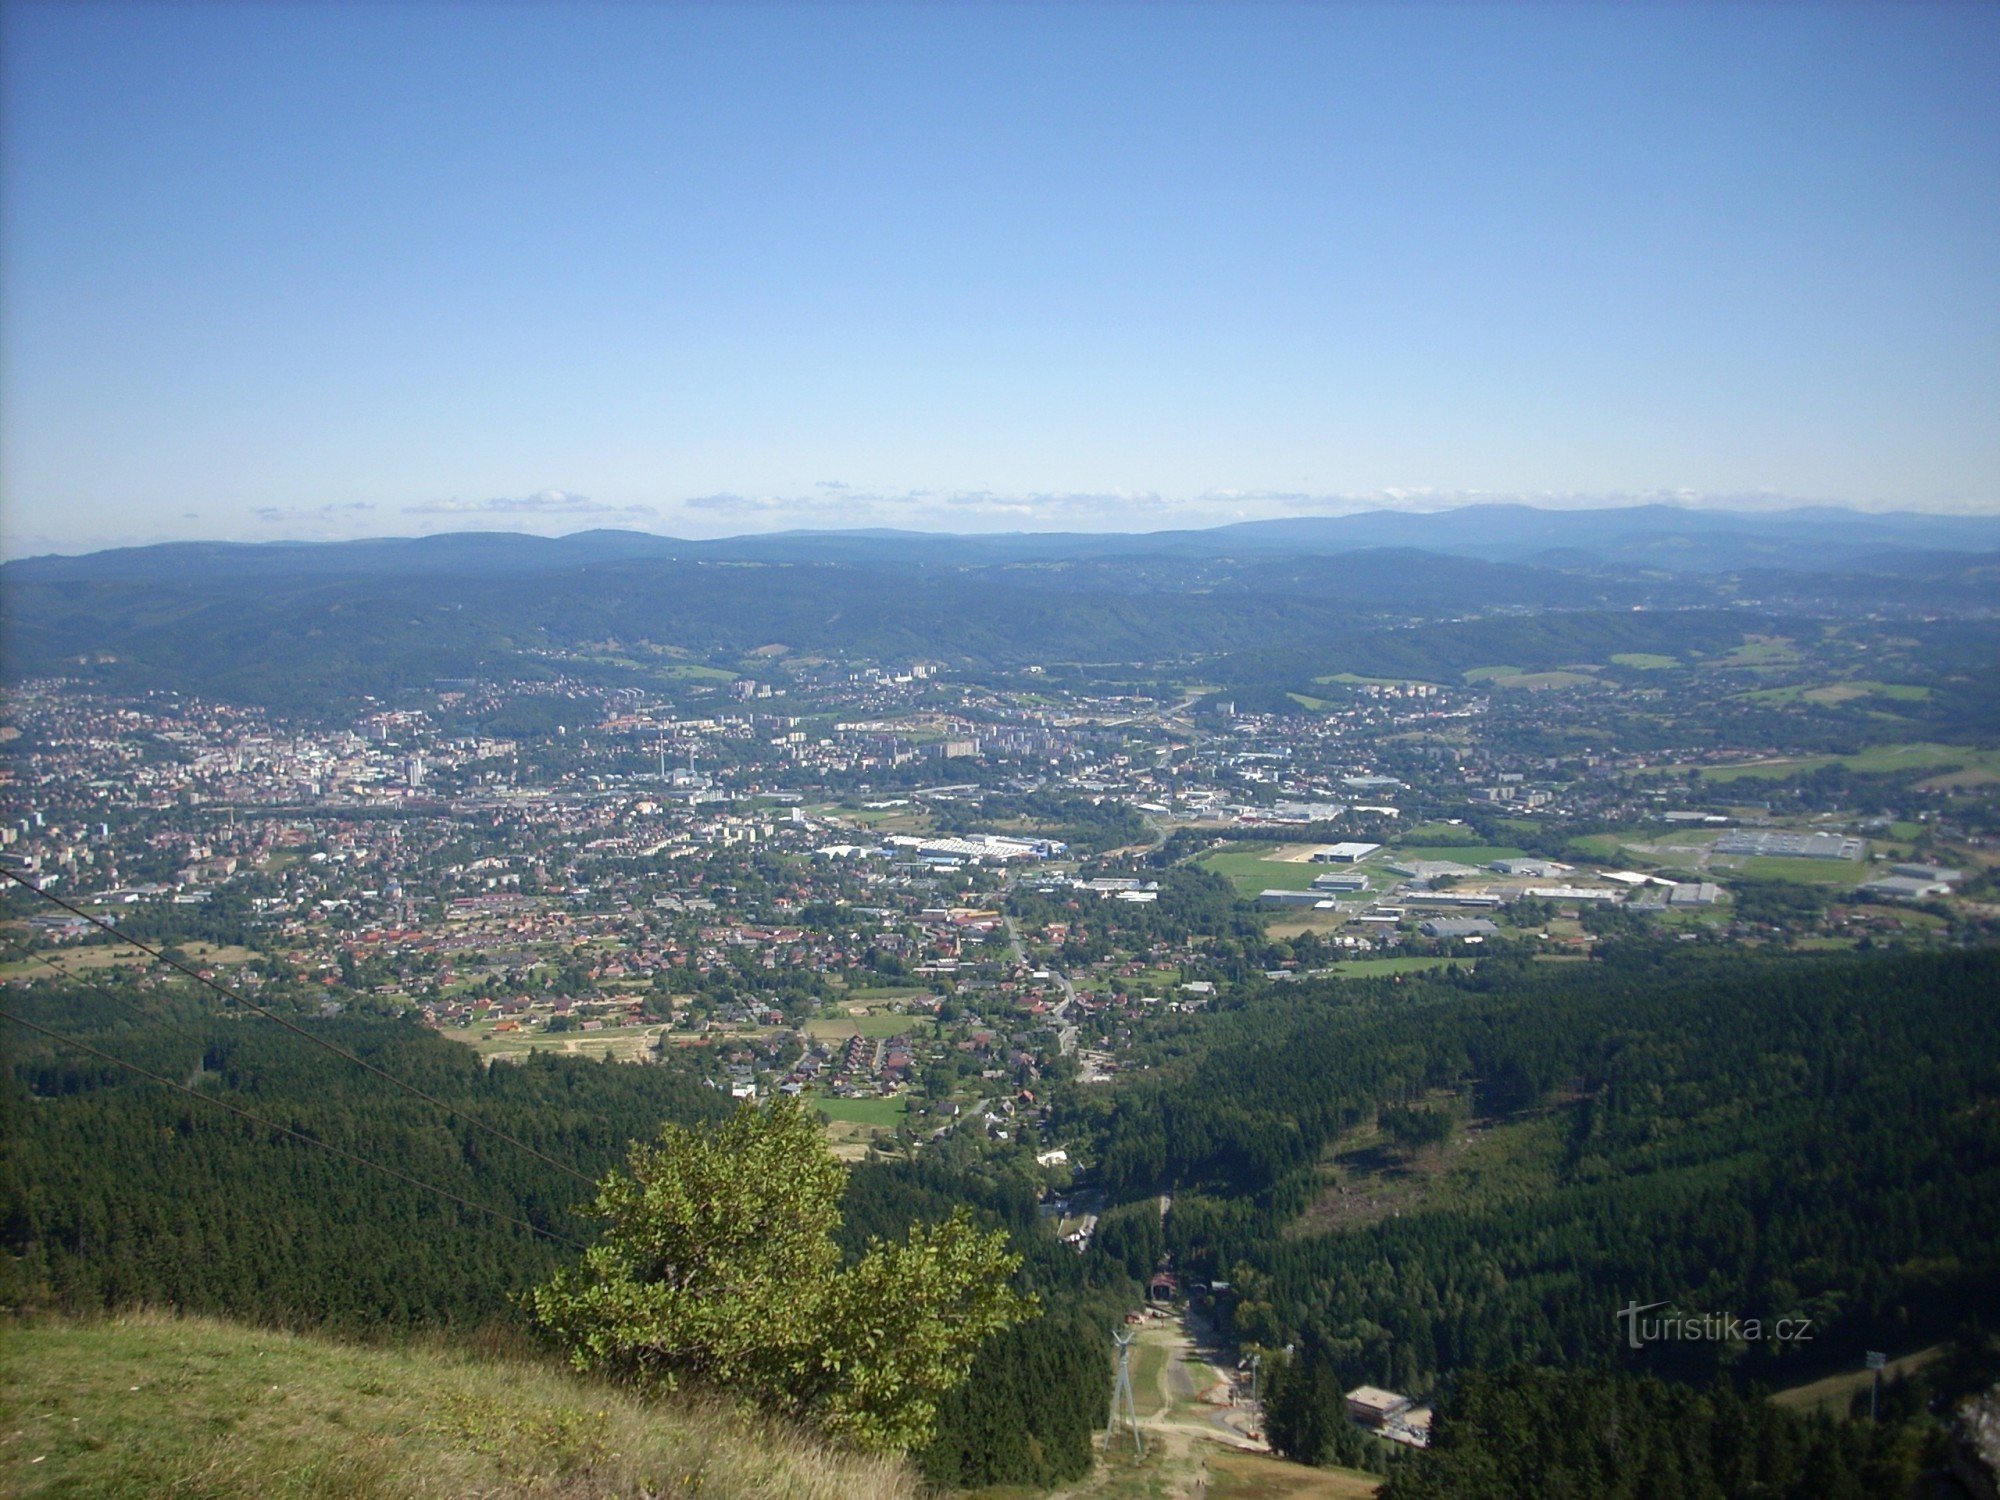 View of Liberec